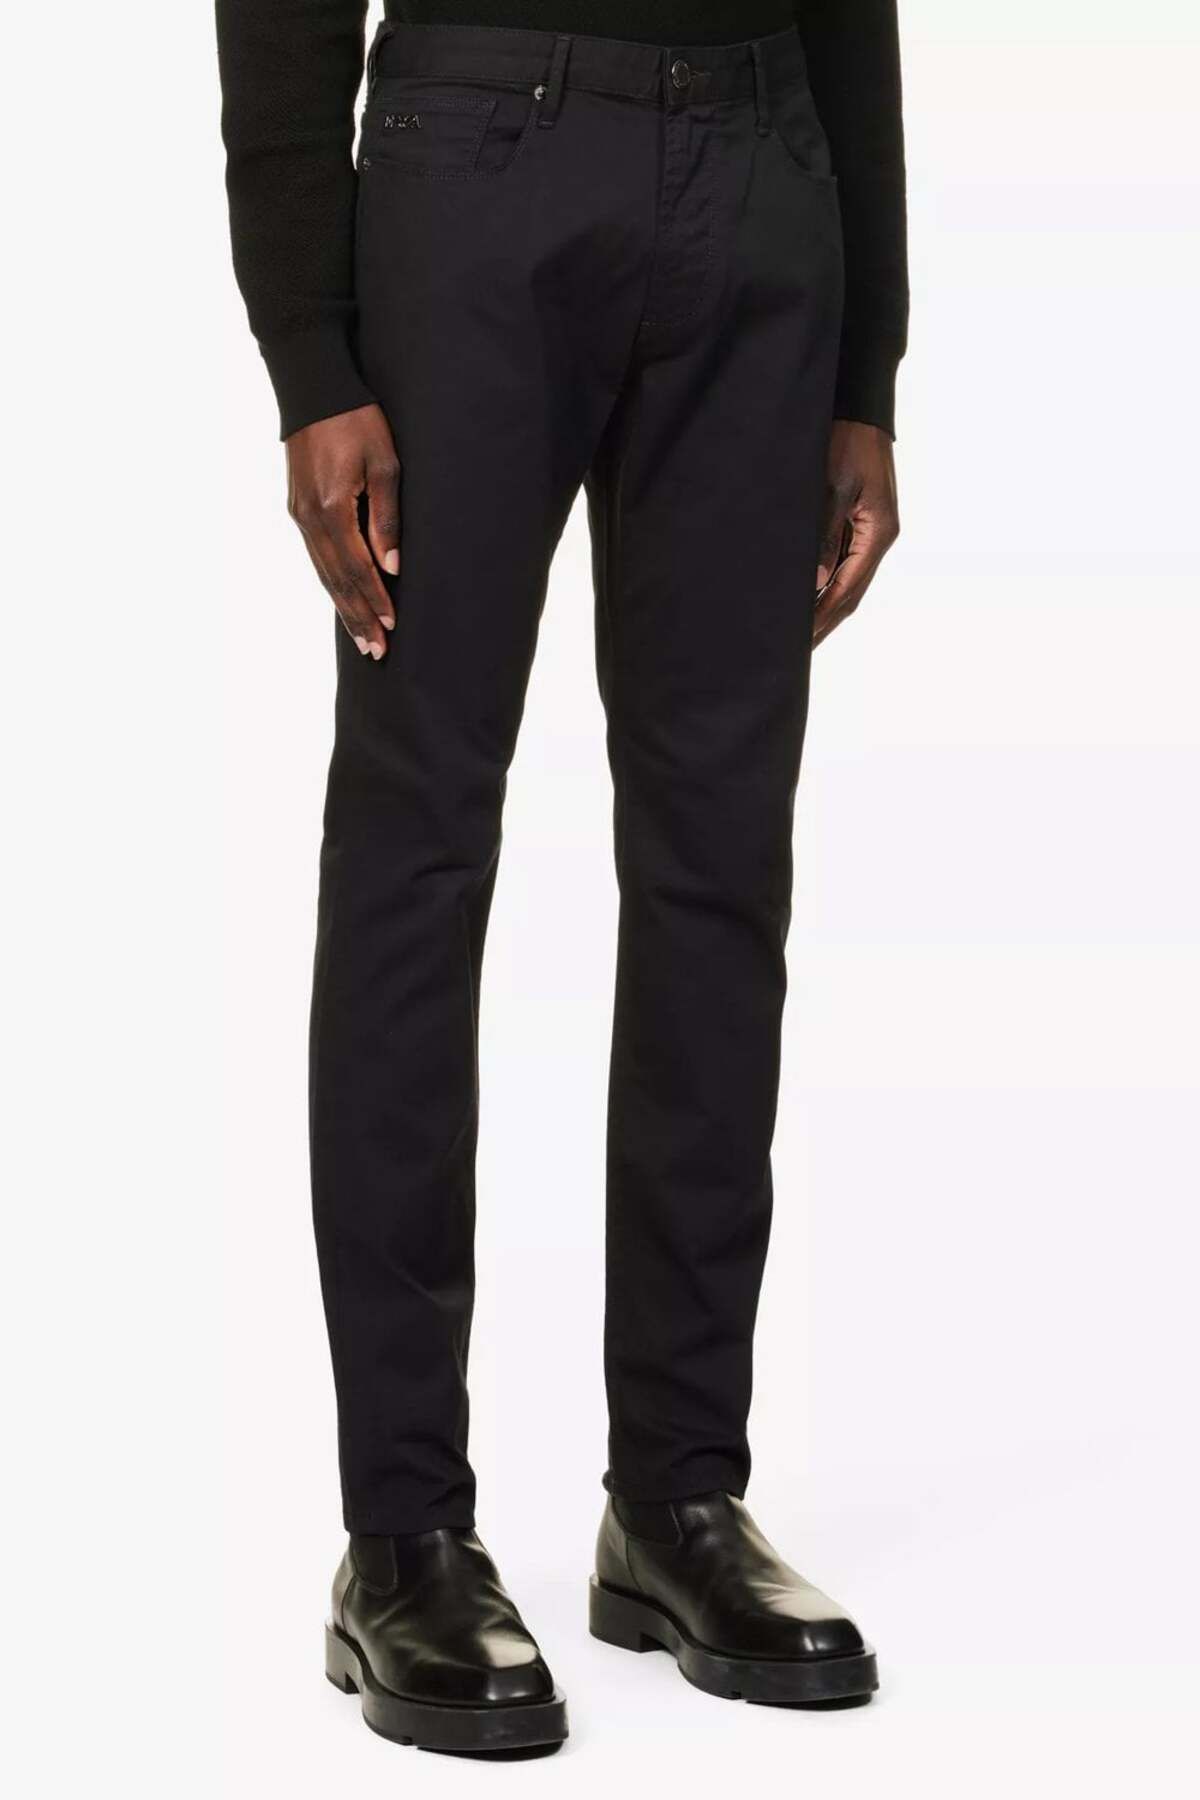 Emporio Armani Erkek Slim Fit Normal Bel Siyah Jeans 3D1J06 1DTFZ-0005